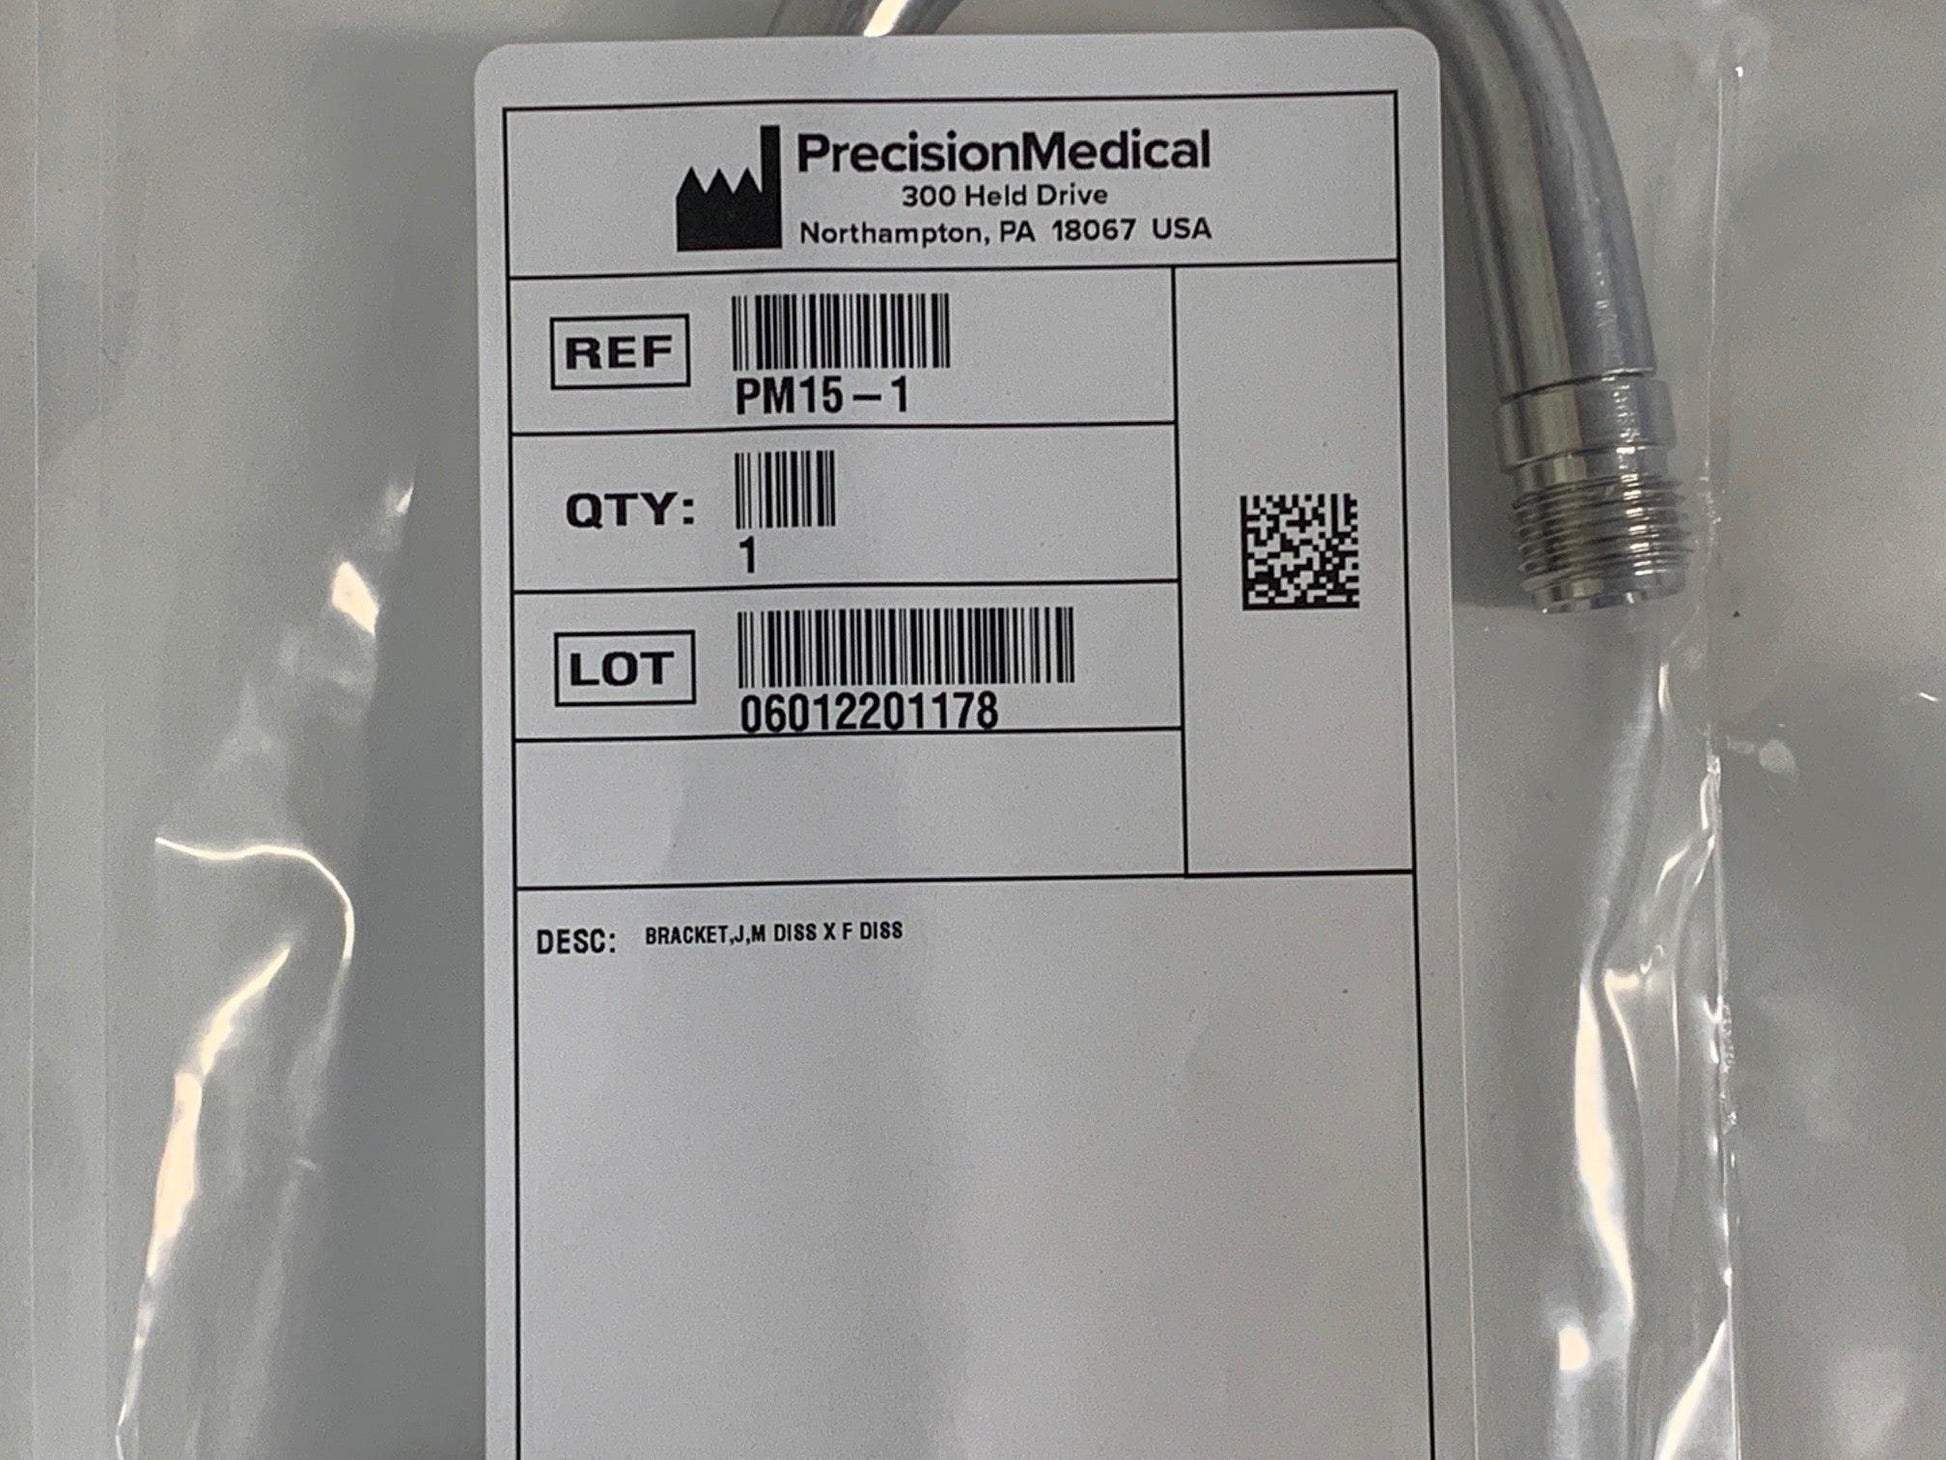 NEW Precision Medical Compressor J Bracket PM15-1 - MBR Medicals